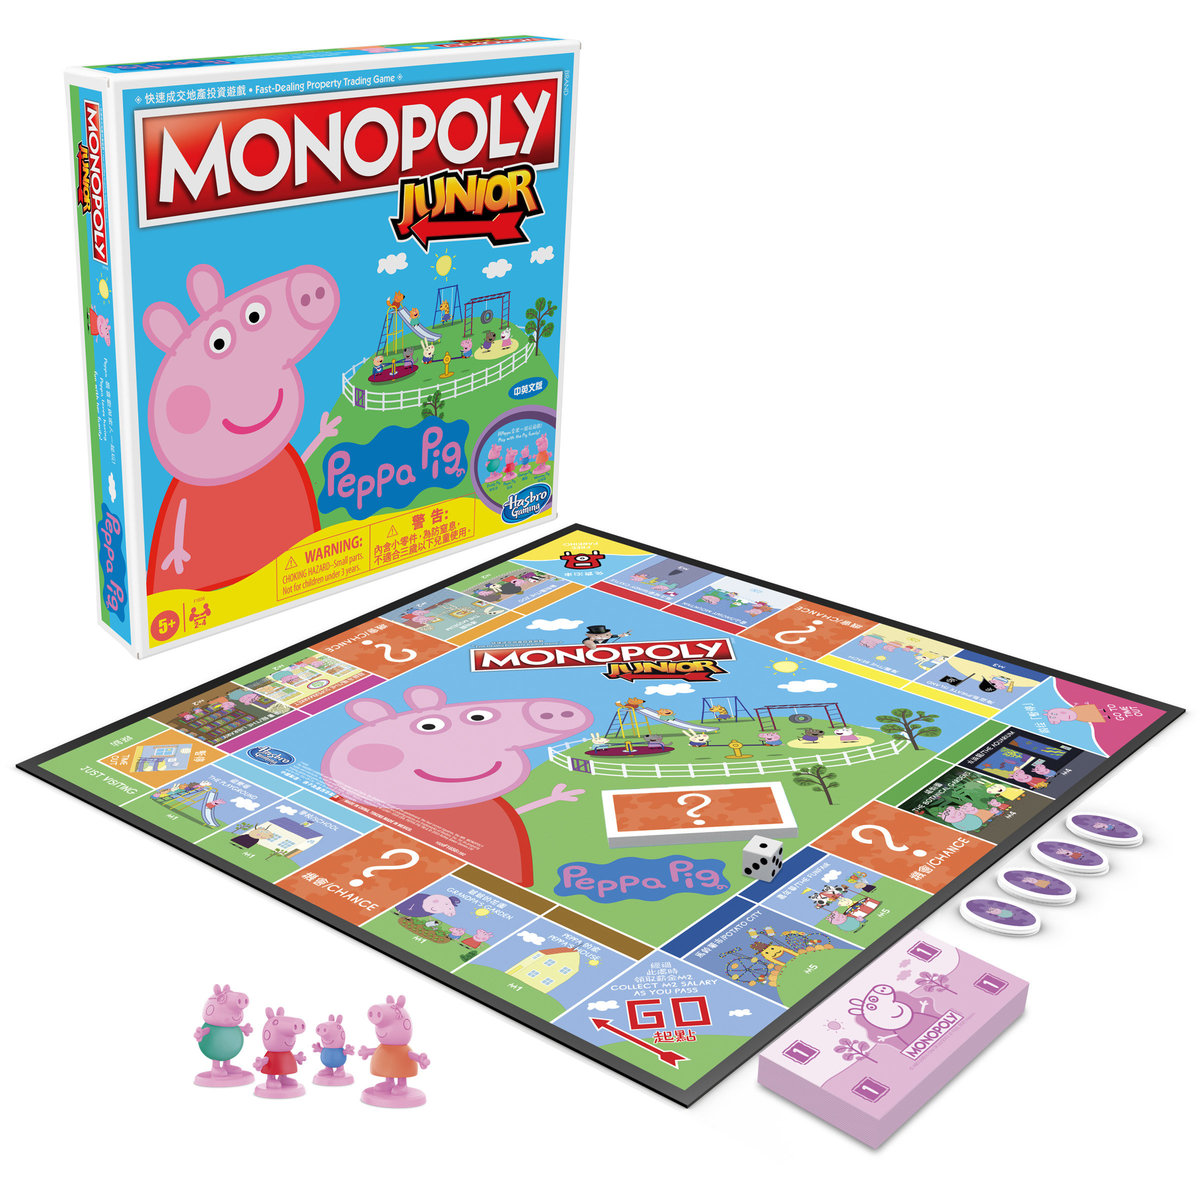 特別版 - Peppa Pig 小小大富翁 桌上遊戲  (中英文版)︱適合 2 至 4 名玩家; 5 歲或以上兒童